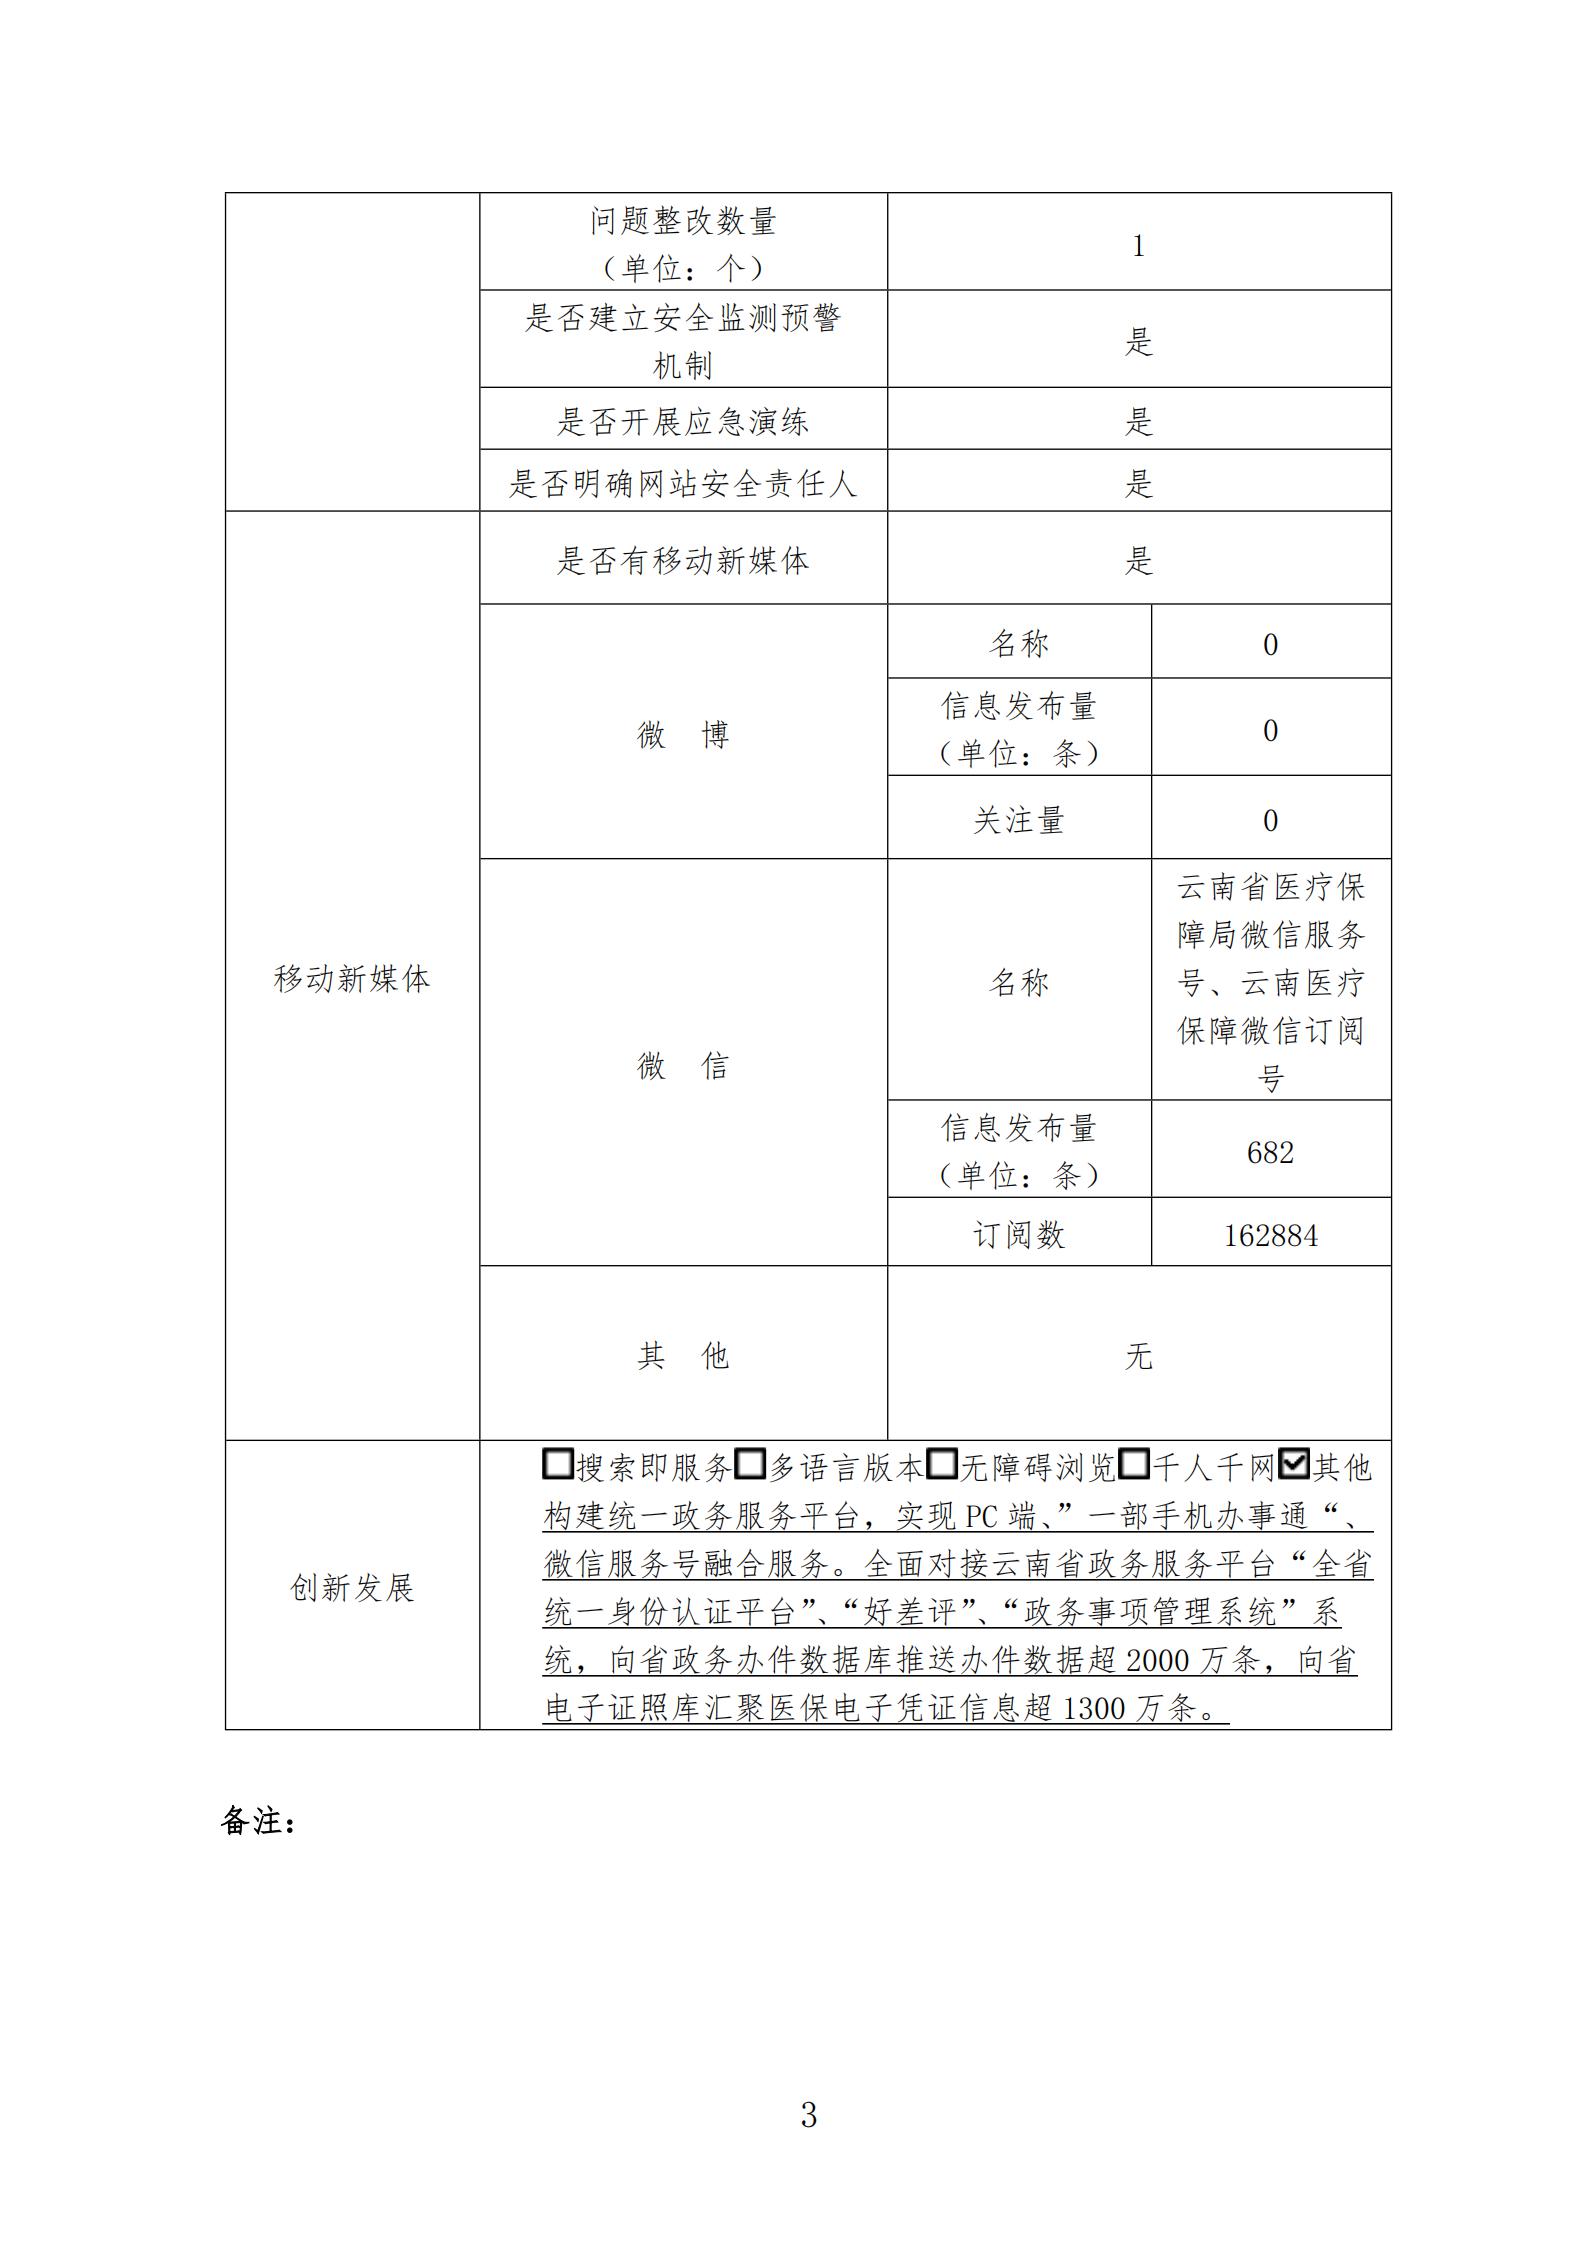 2020年云南省医疗保障局网站年度报表_02.jpg